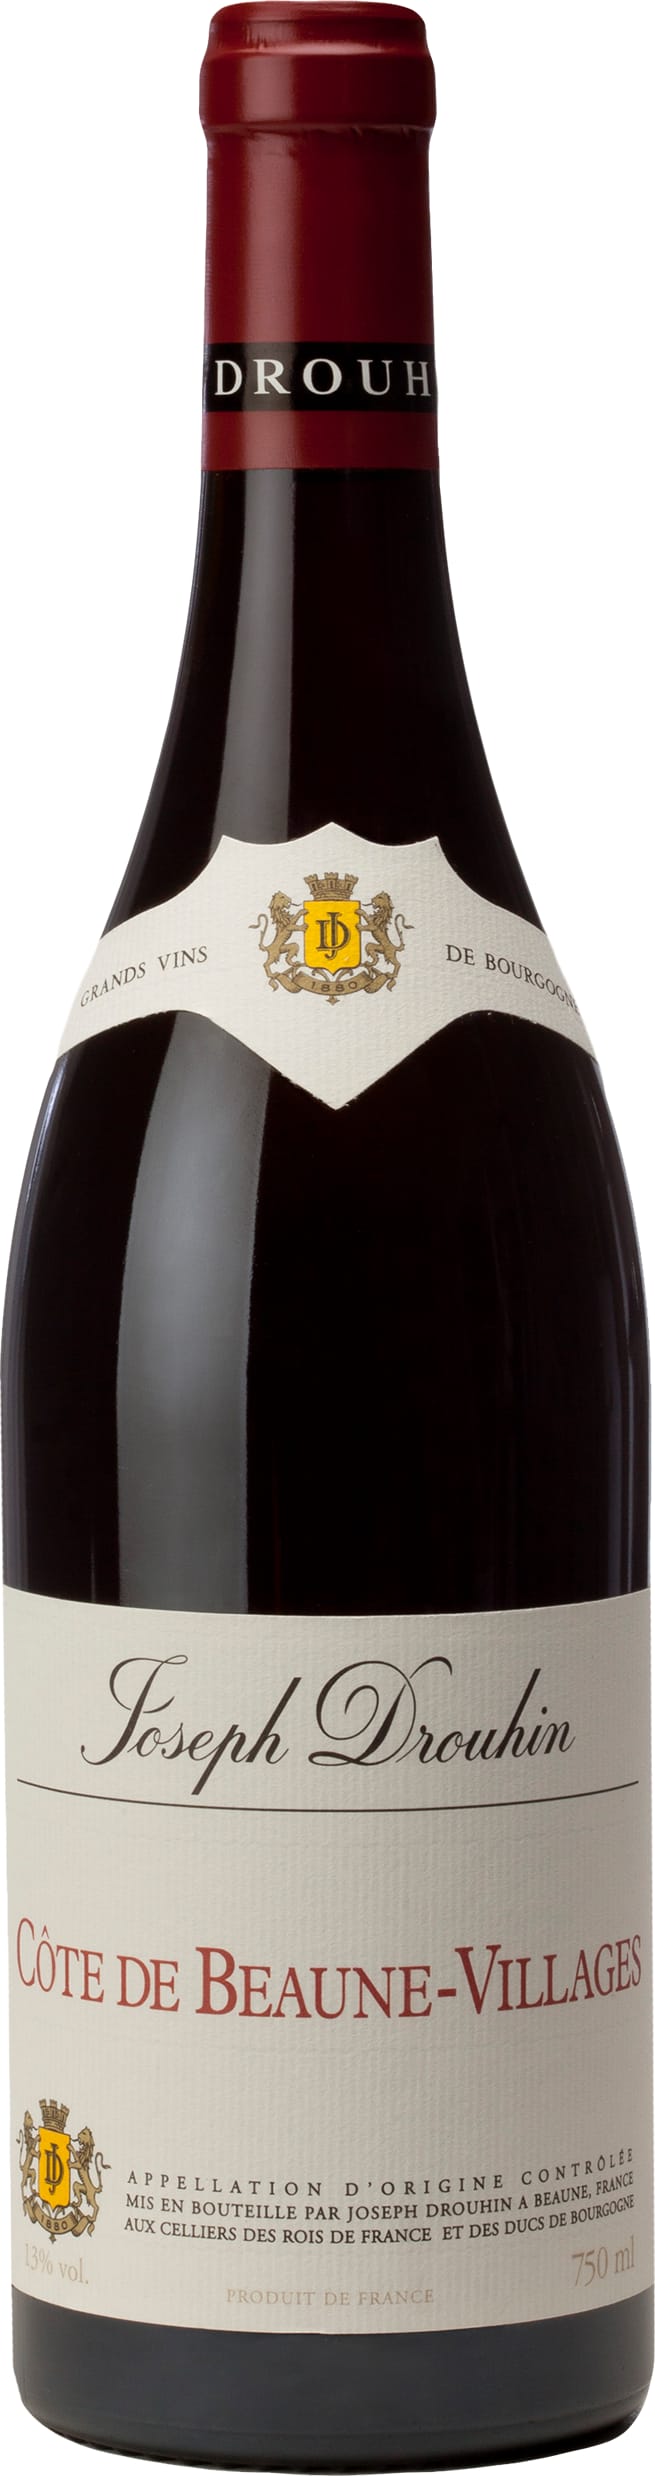 Joseph Drouhin Cote de Beaune-Villages 2020 75cl - Buy Joseph Drouhin Wines from GREAT WINES DIRECT wine shop